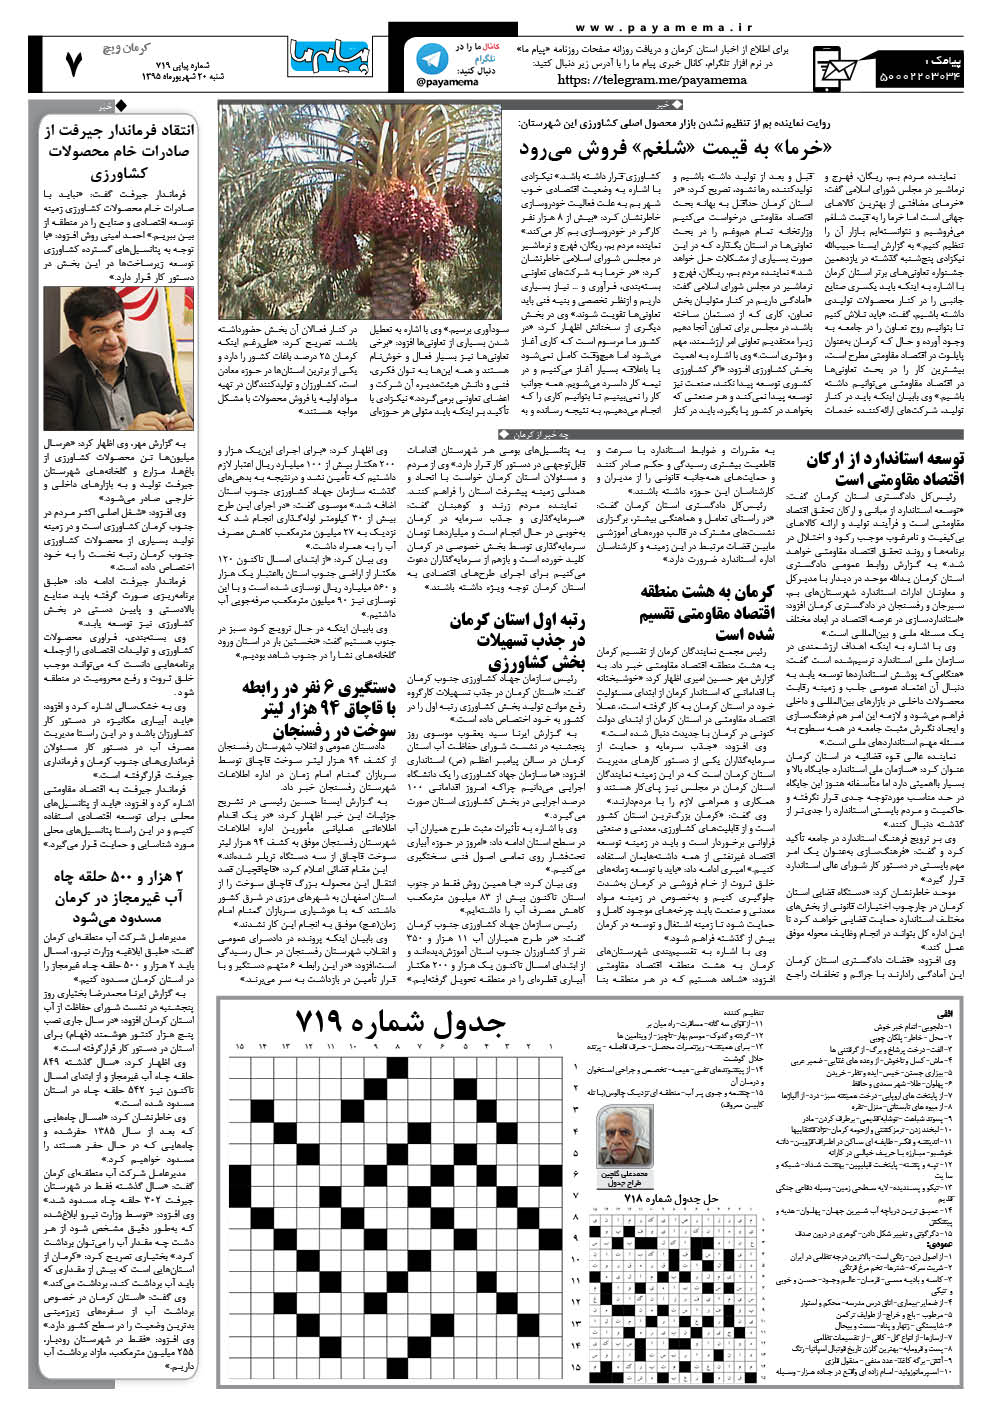 صفحه کرمان ویج شماره 719 روزنامه پیام ما